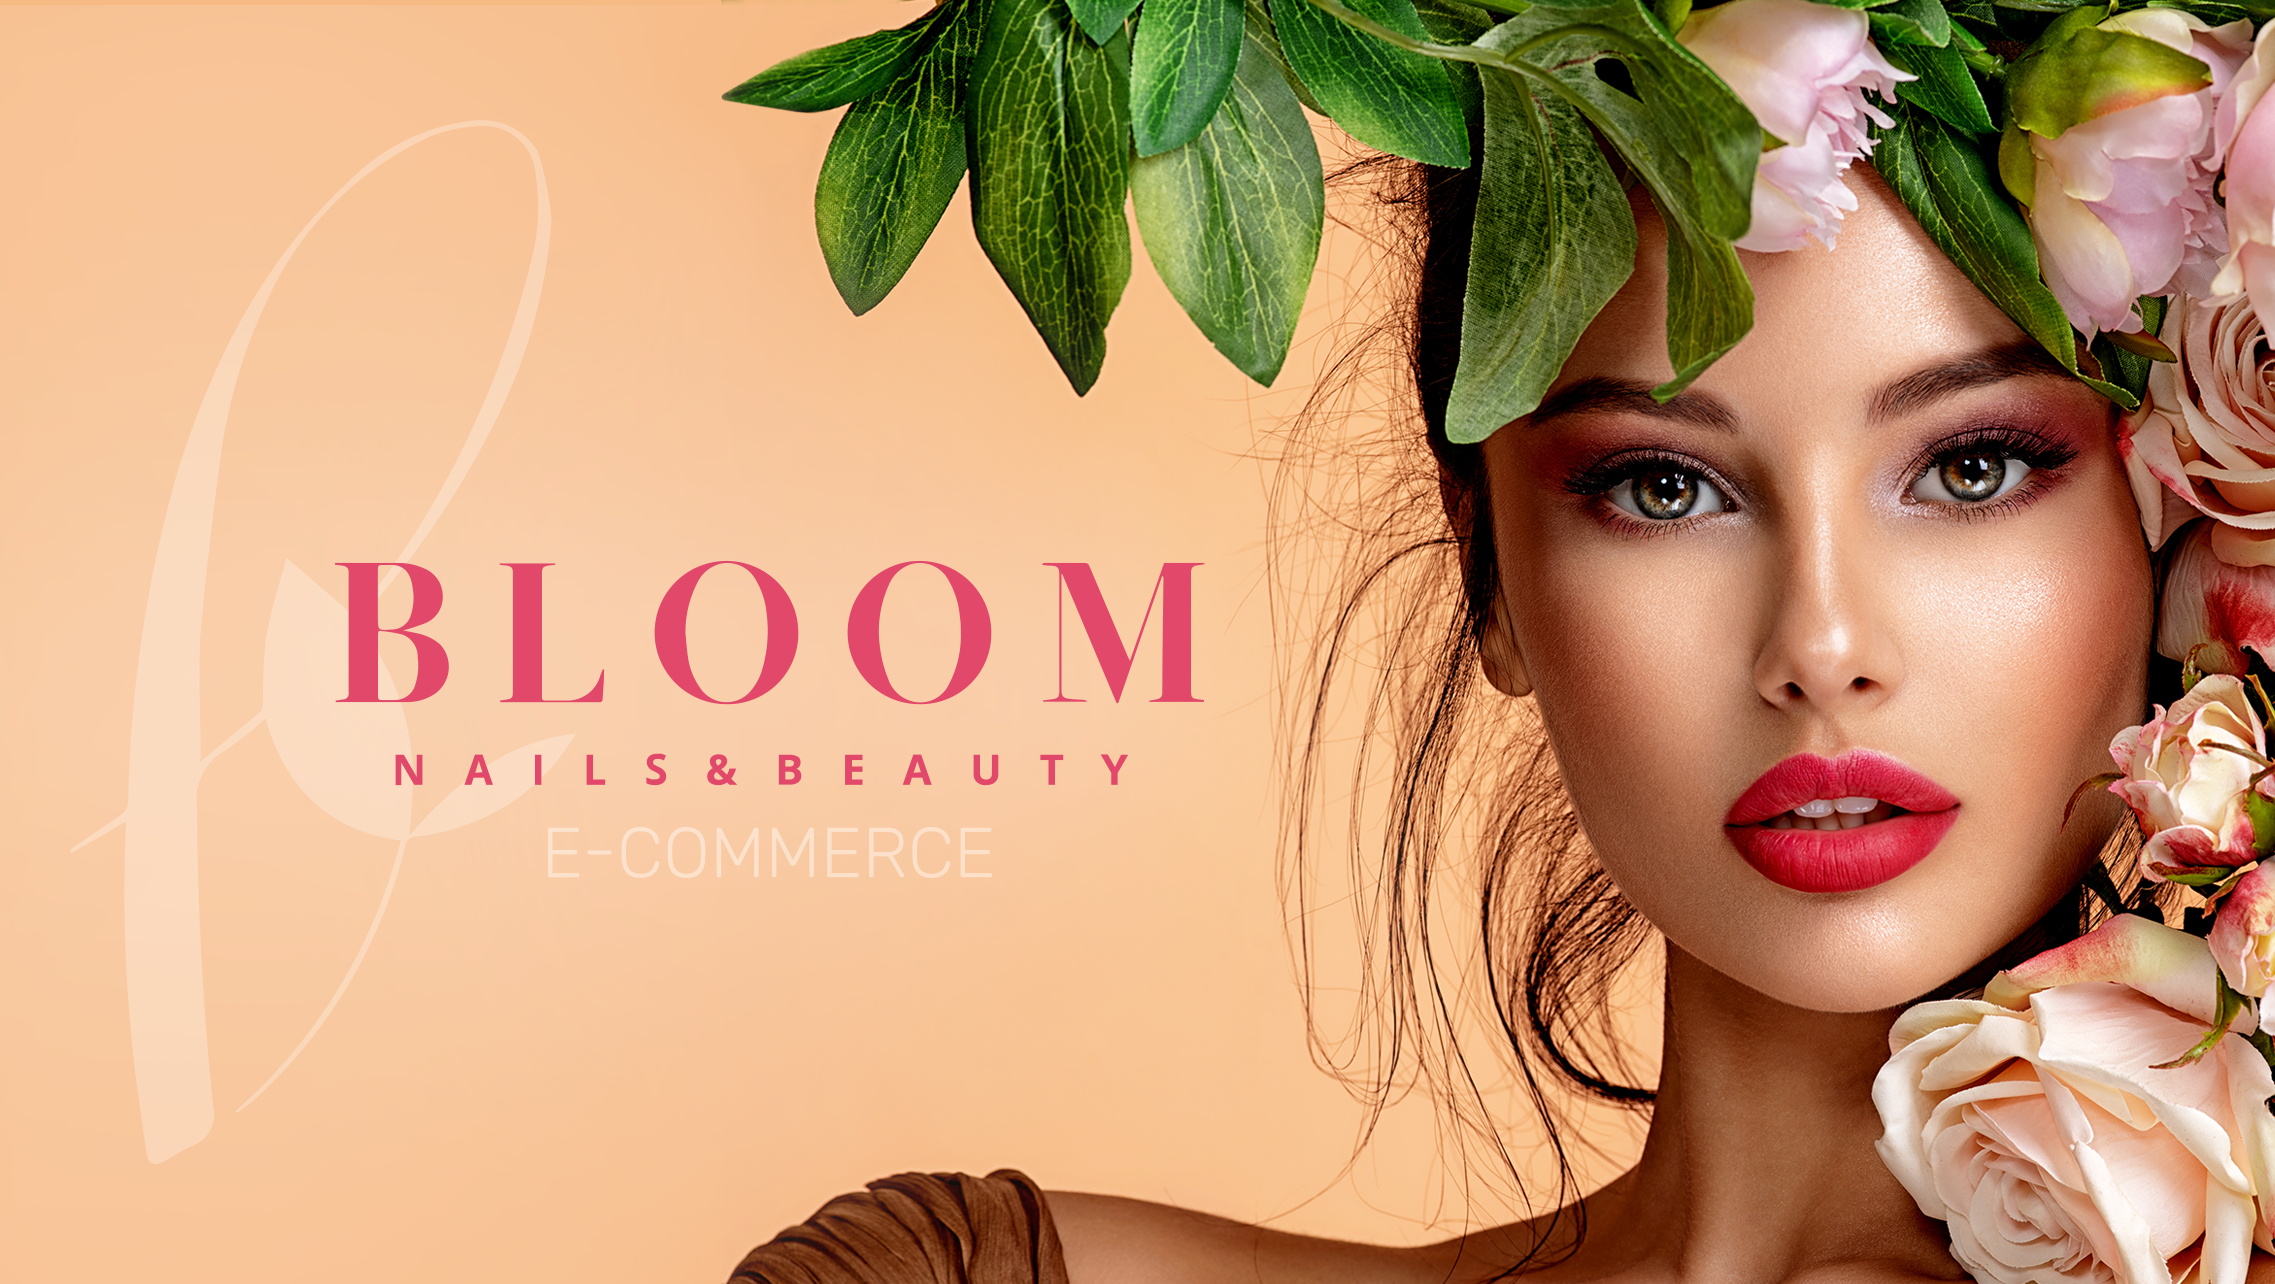 Створення інтернет магазину косметики Bloom-store